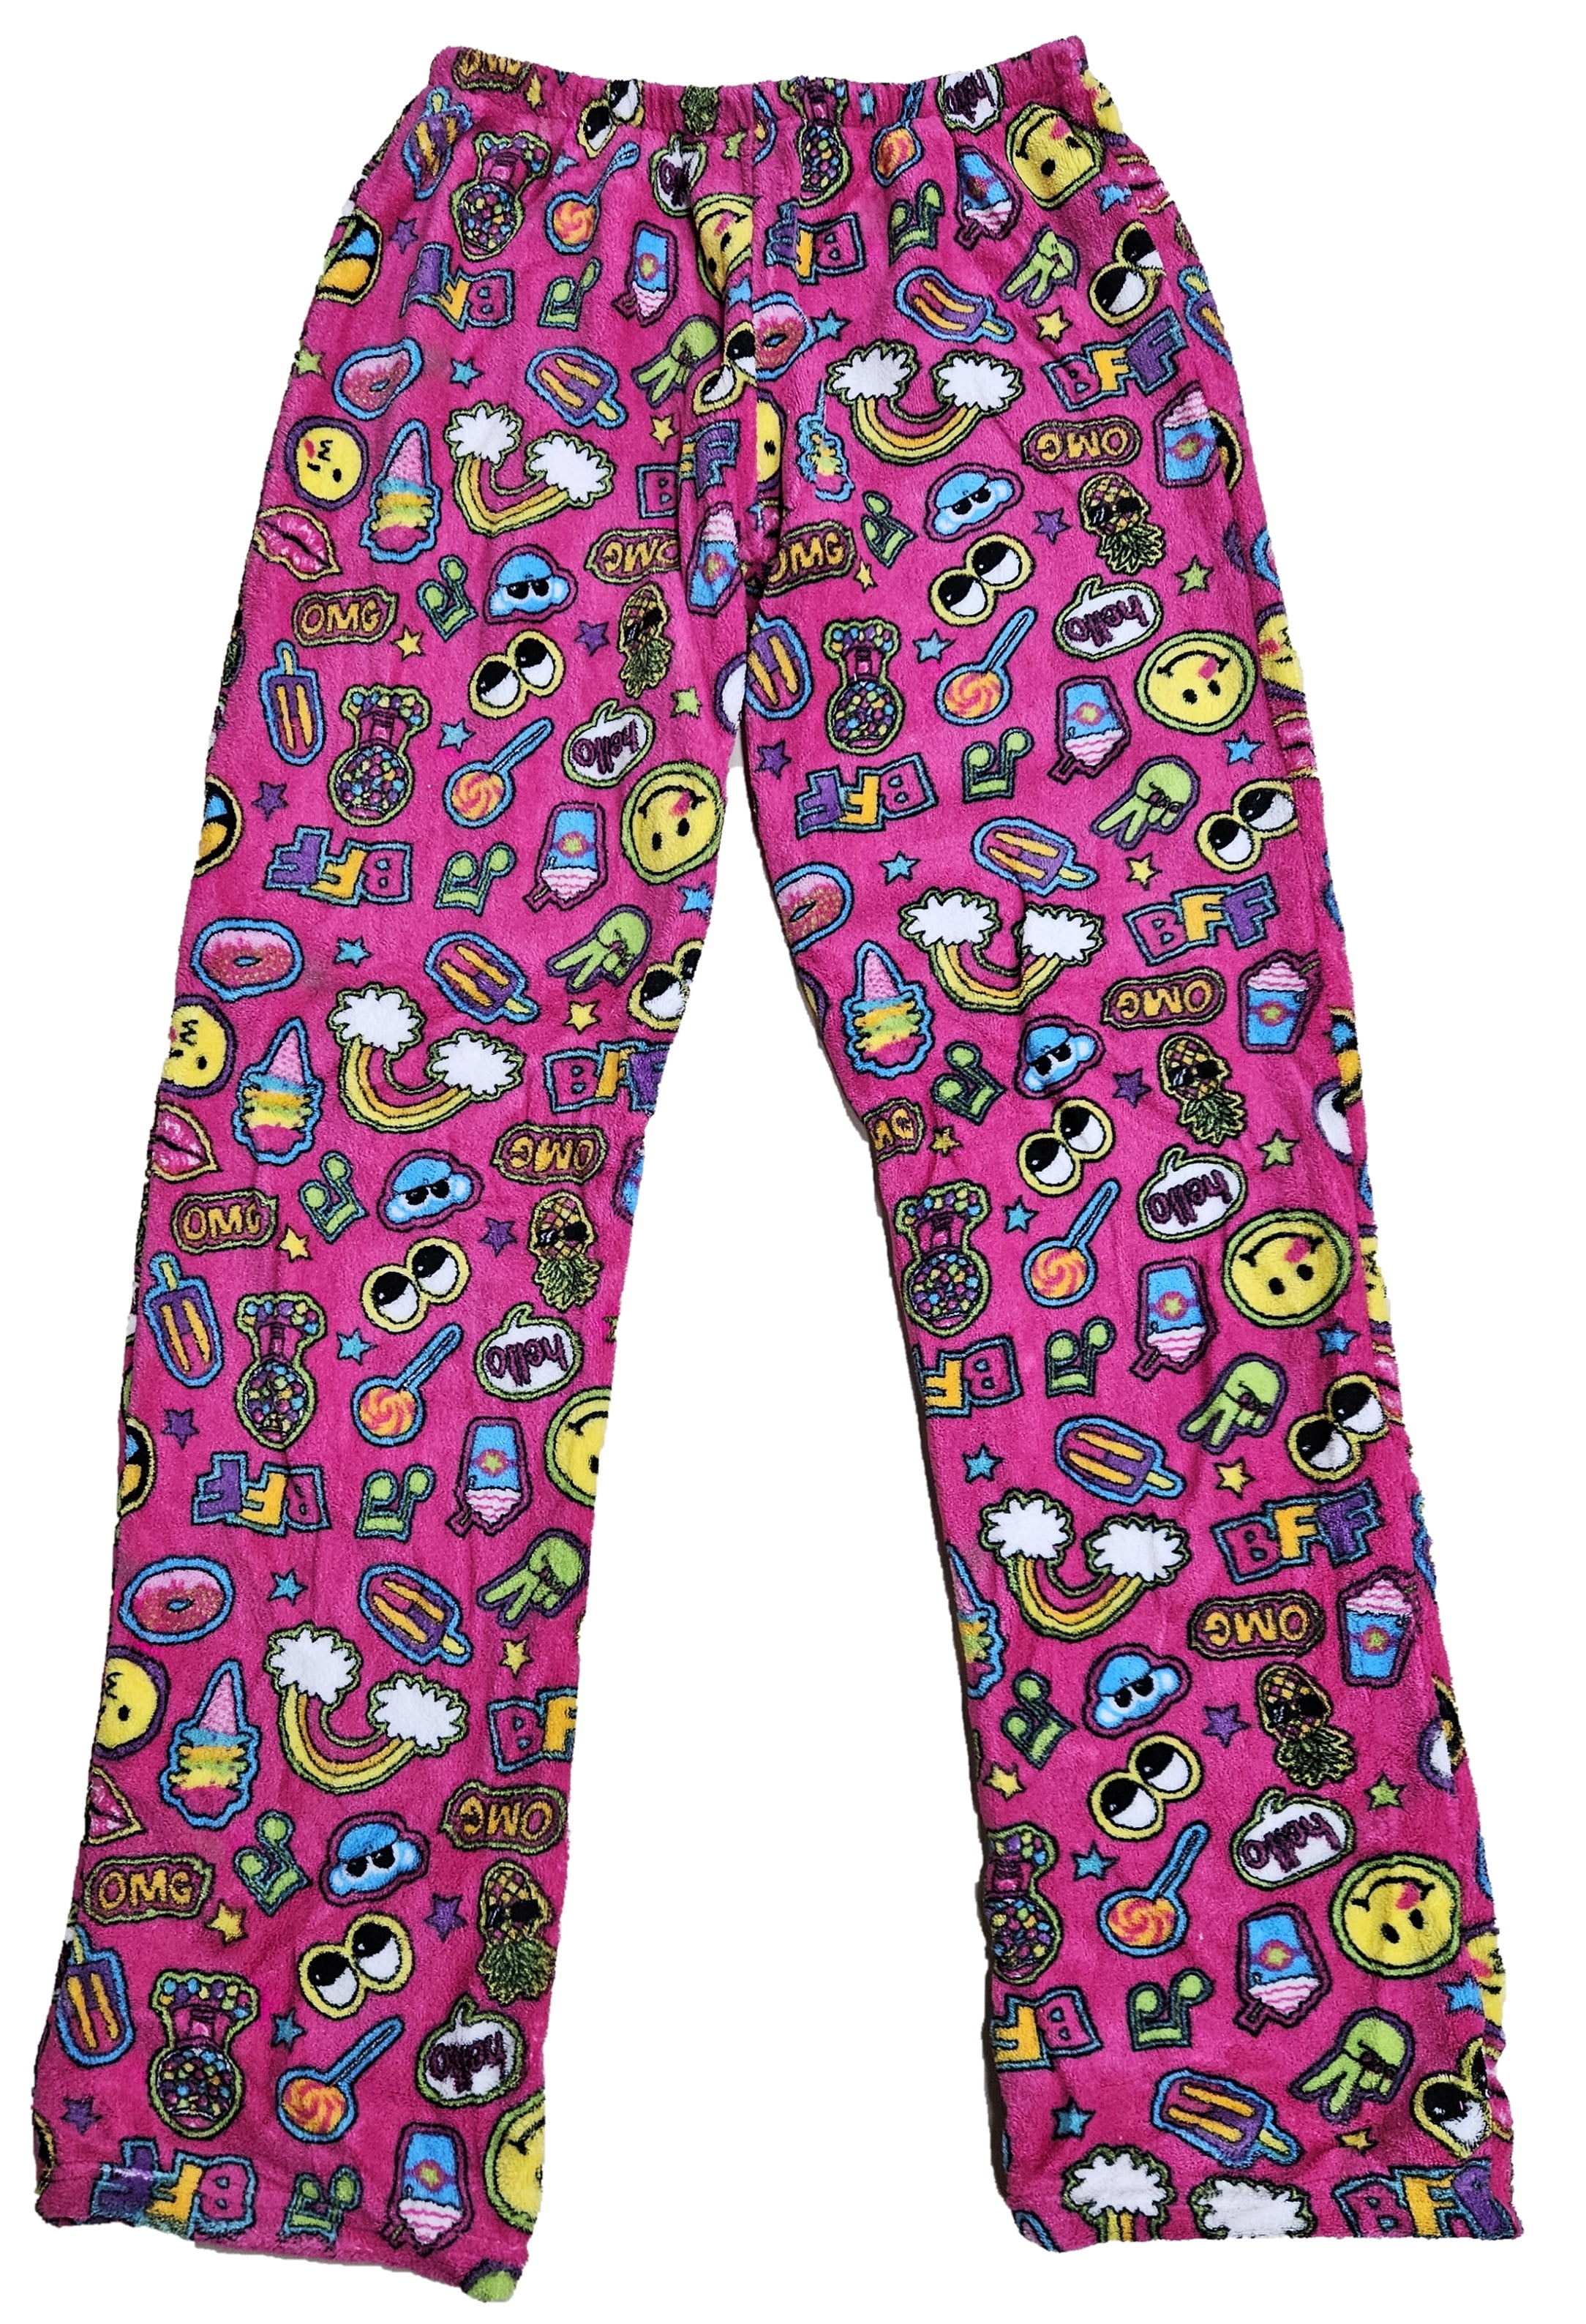 Fuzzies by Confetti Women Pajama Pants Sleepwear Fleece PJ, Junior Small 